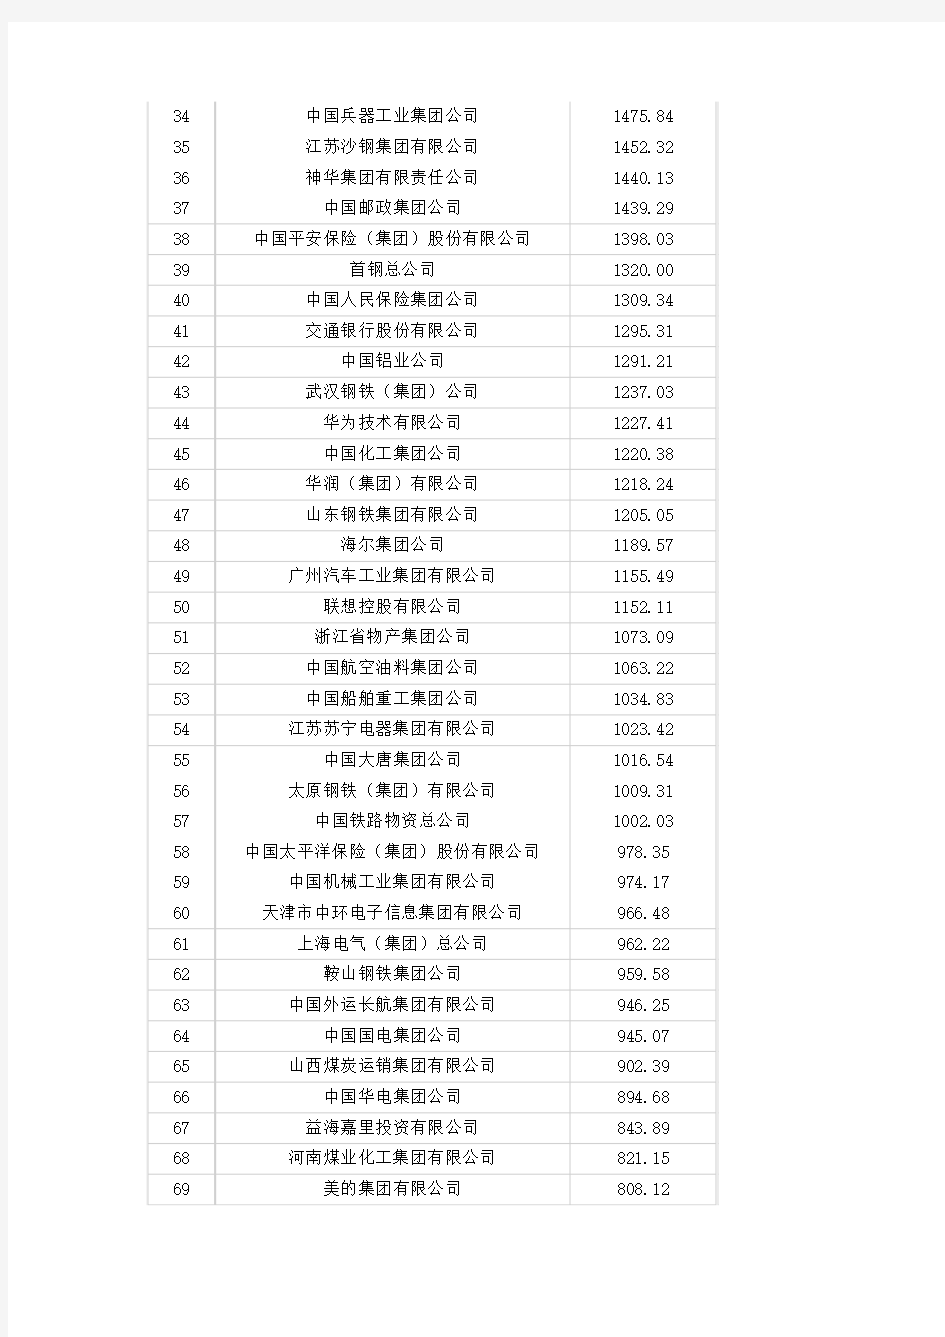 2009年中国企业500强名单及收入排名